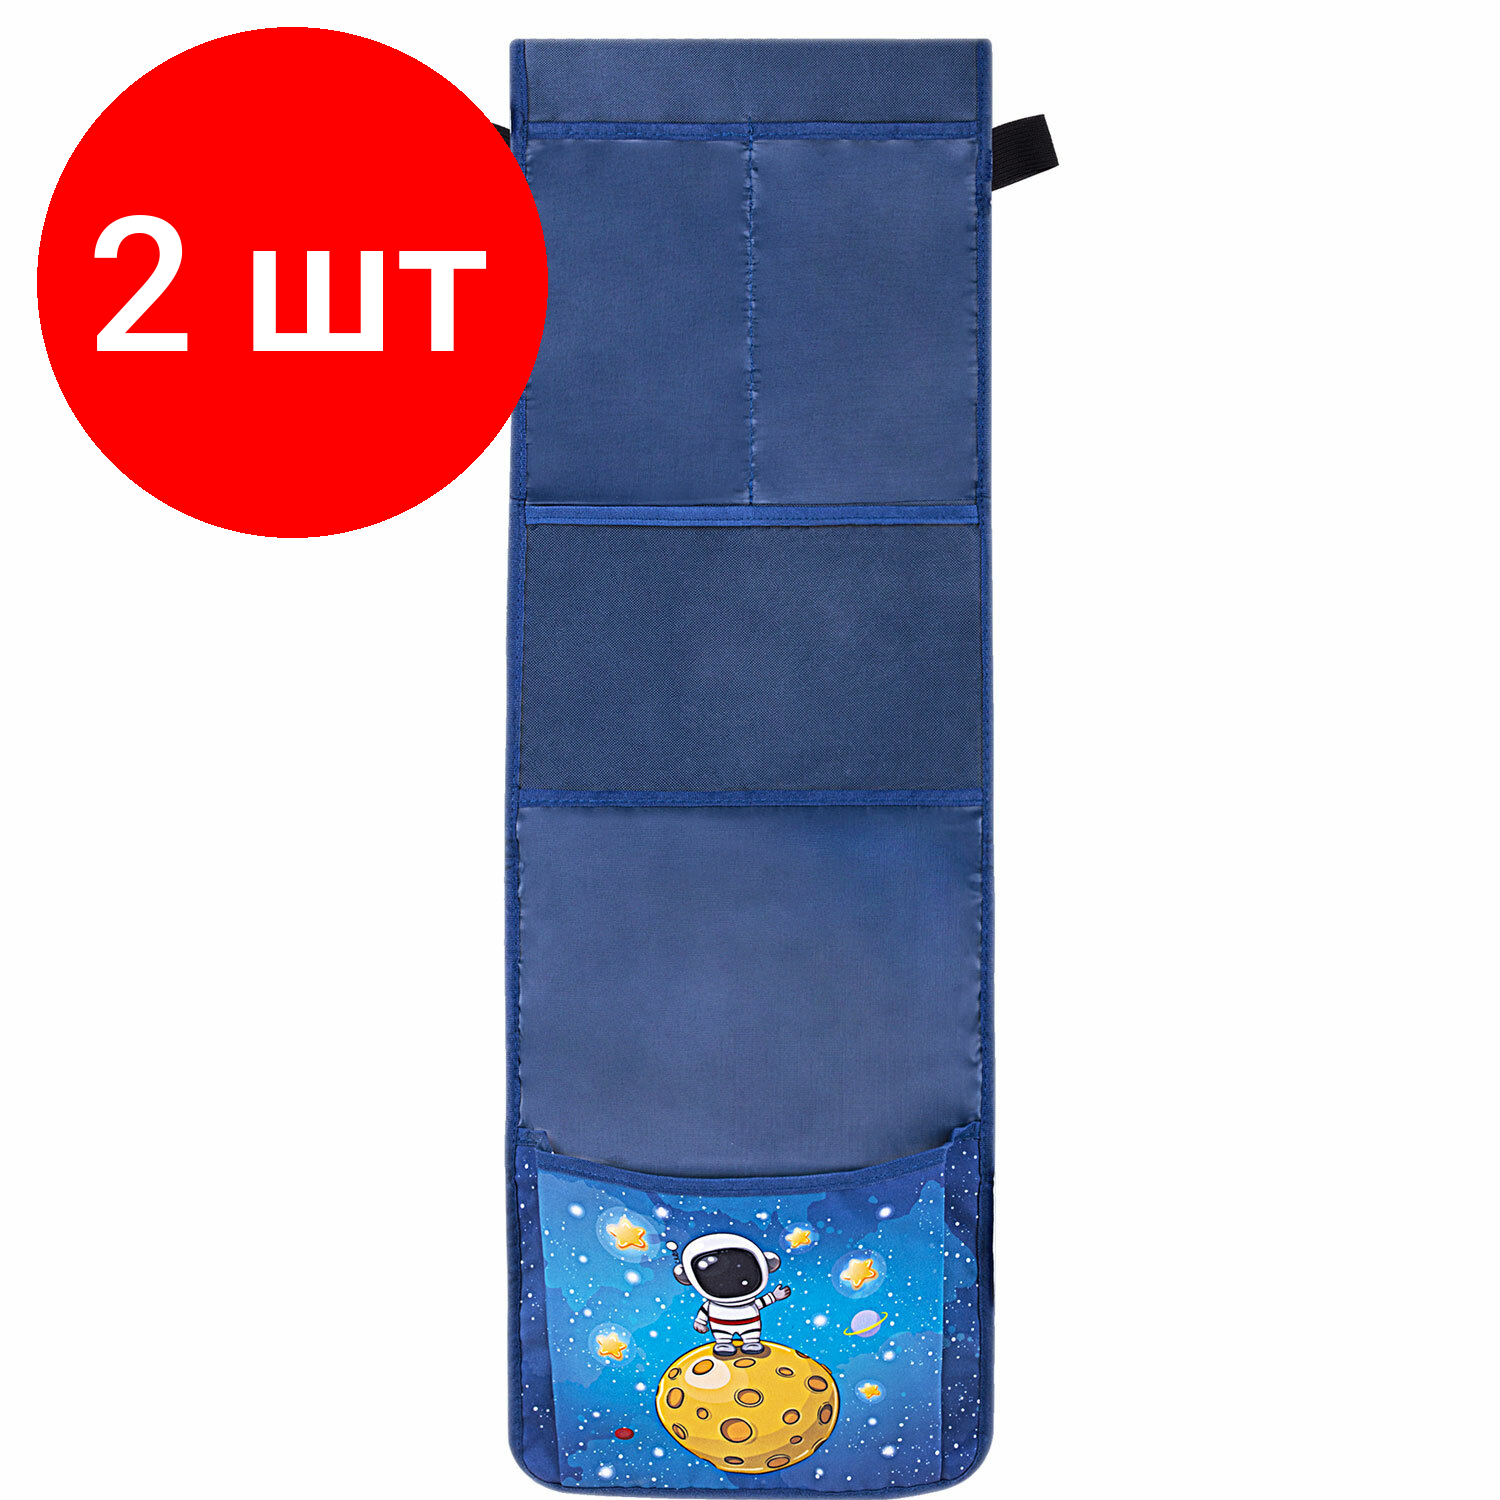 Комплект 2 шт, Кармашки-органайзер в шкафчик для детского сада юнландия, увеличенный размер, 26х80 см, "Space dude", 271071